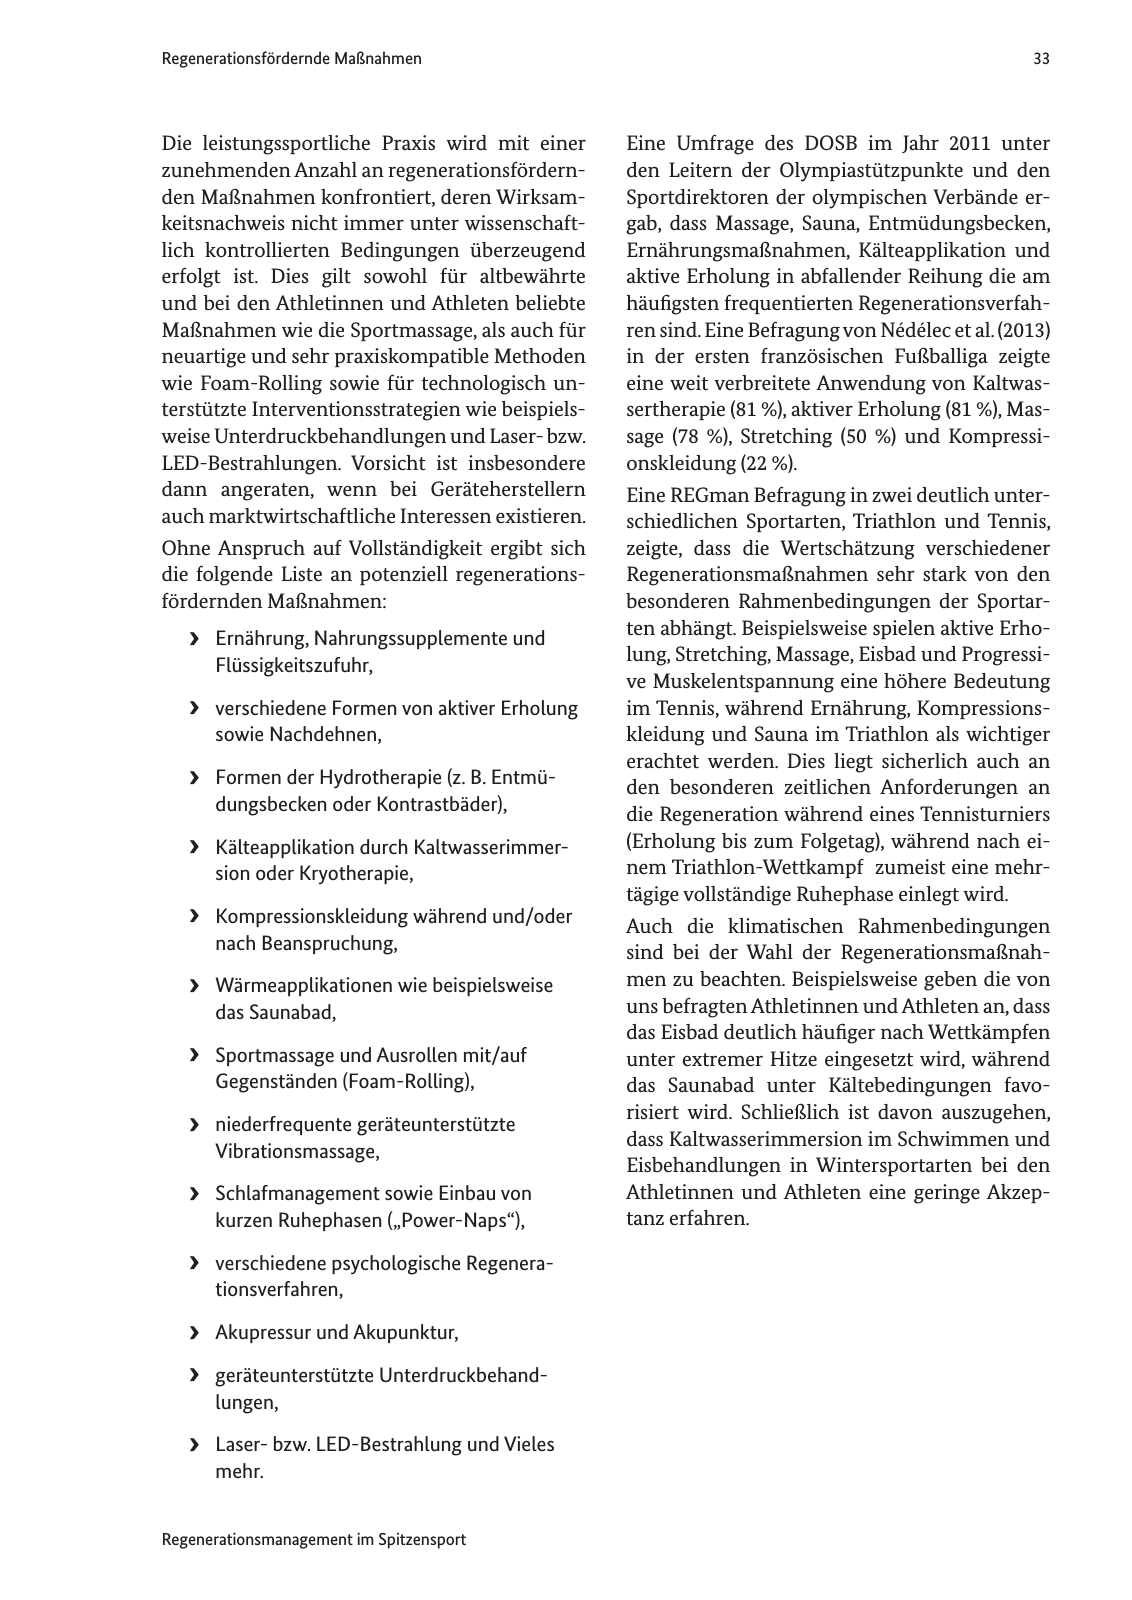 Vorschau Handreichung Regmann / Regenerationsmanagement im Spitzensport Seite 34